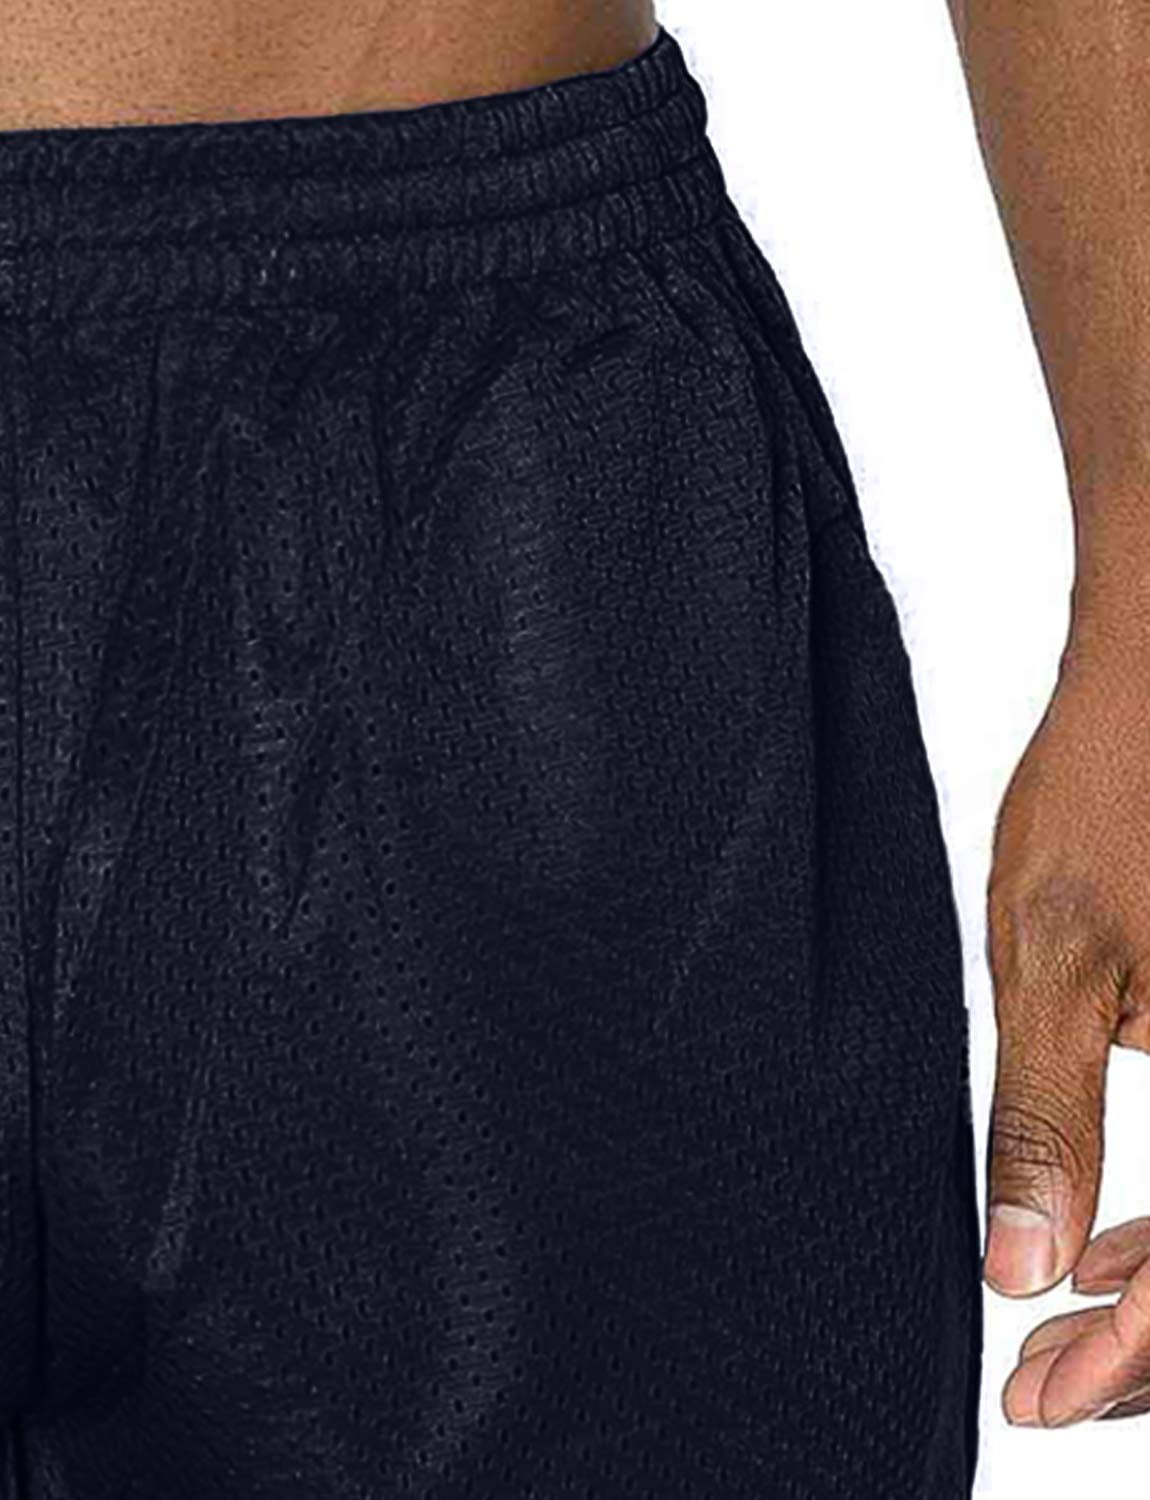 Nike Air Jordan Blockout Basketball Men's Size S Gym Shorts AJ6559-021 Gray  - Small